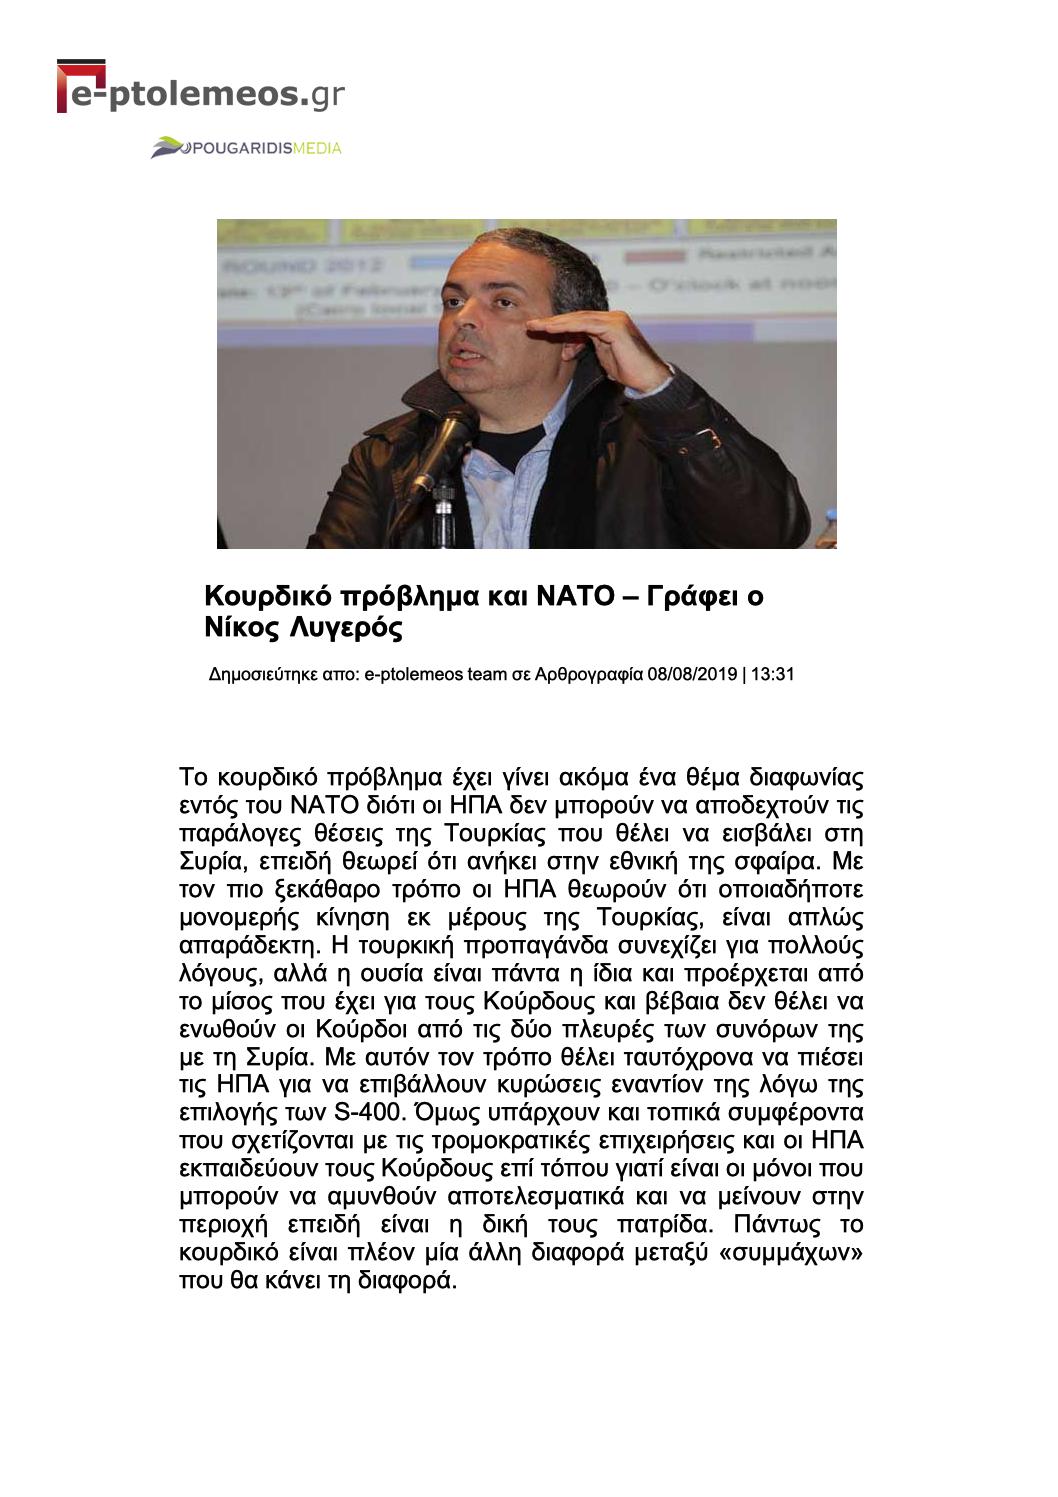 Κουρδικό πρόβλημα και ΝΑΤΟ, e-ptolemeos, 08/08/2019 - Publication